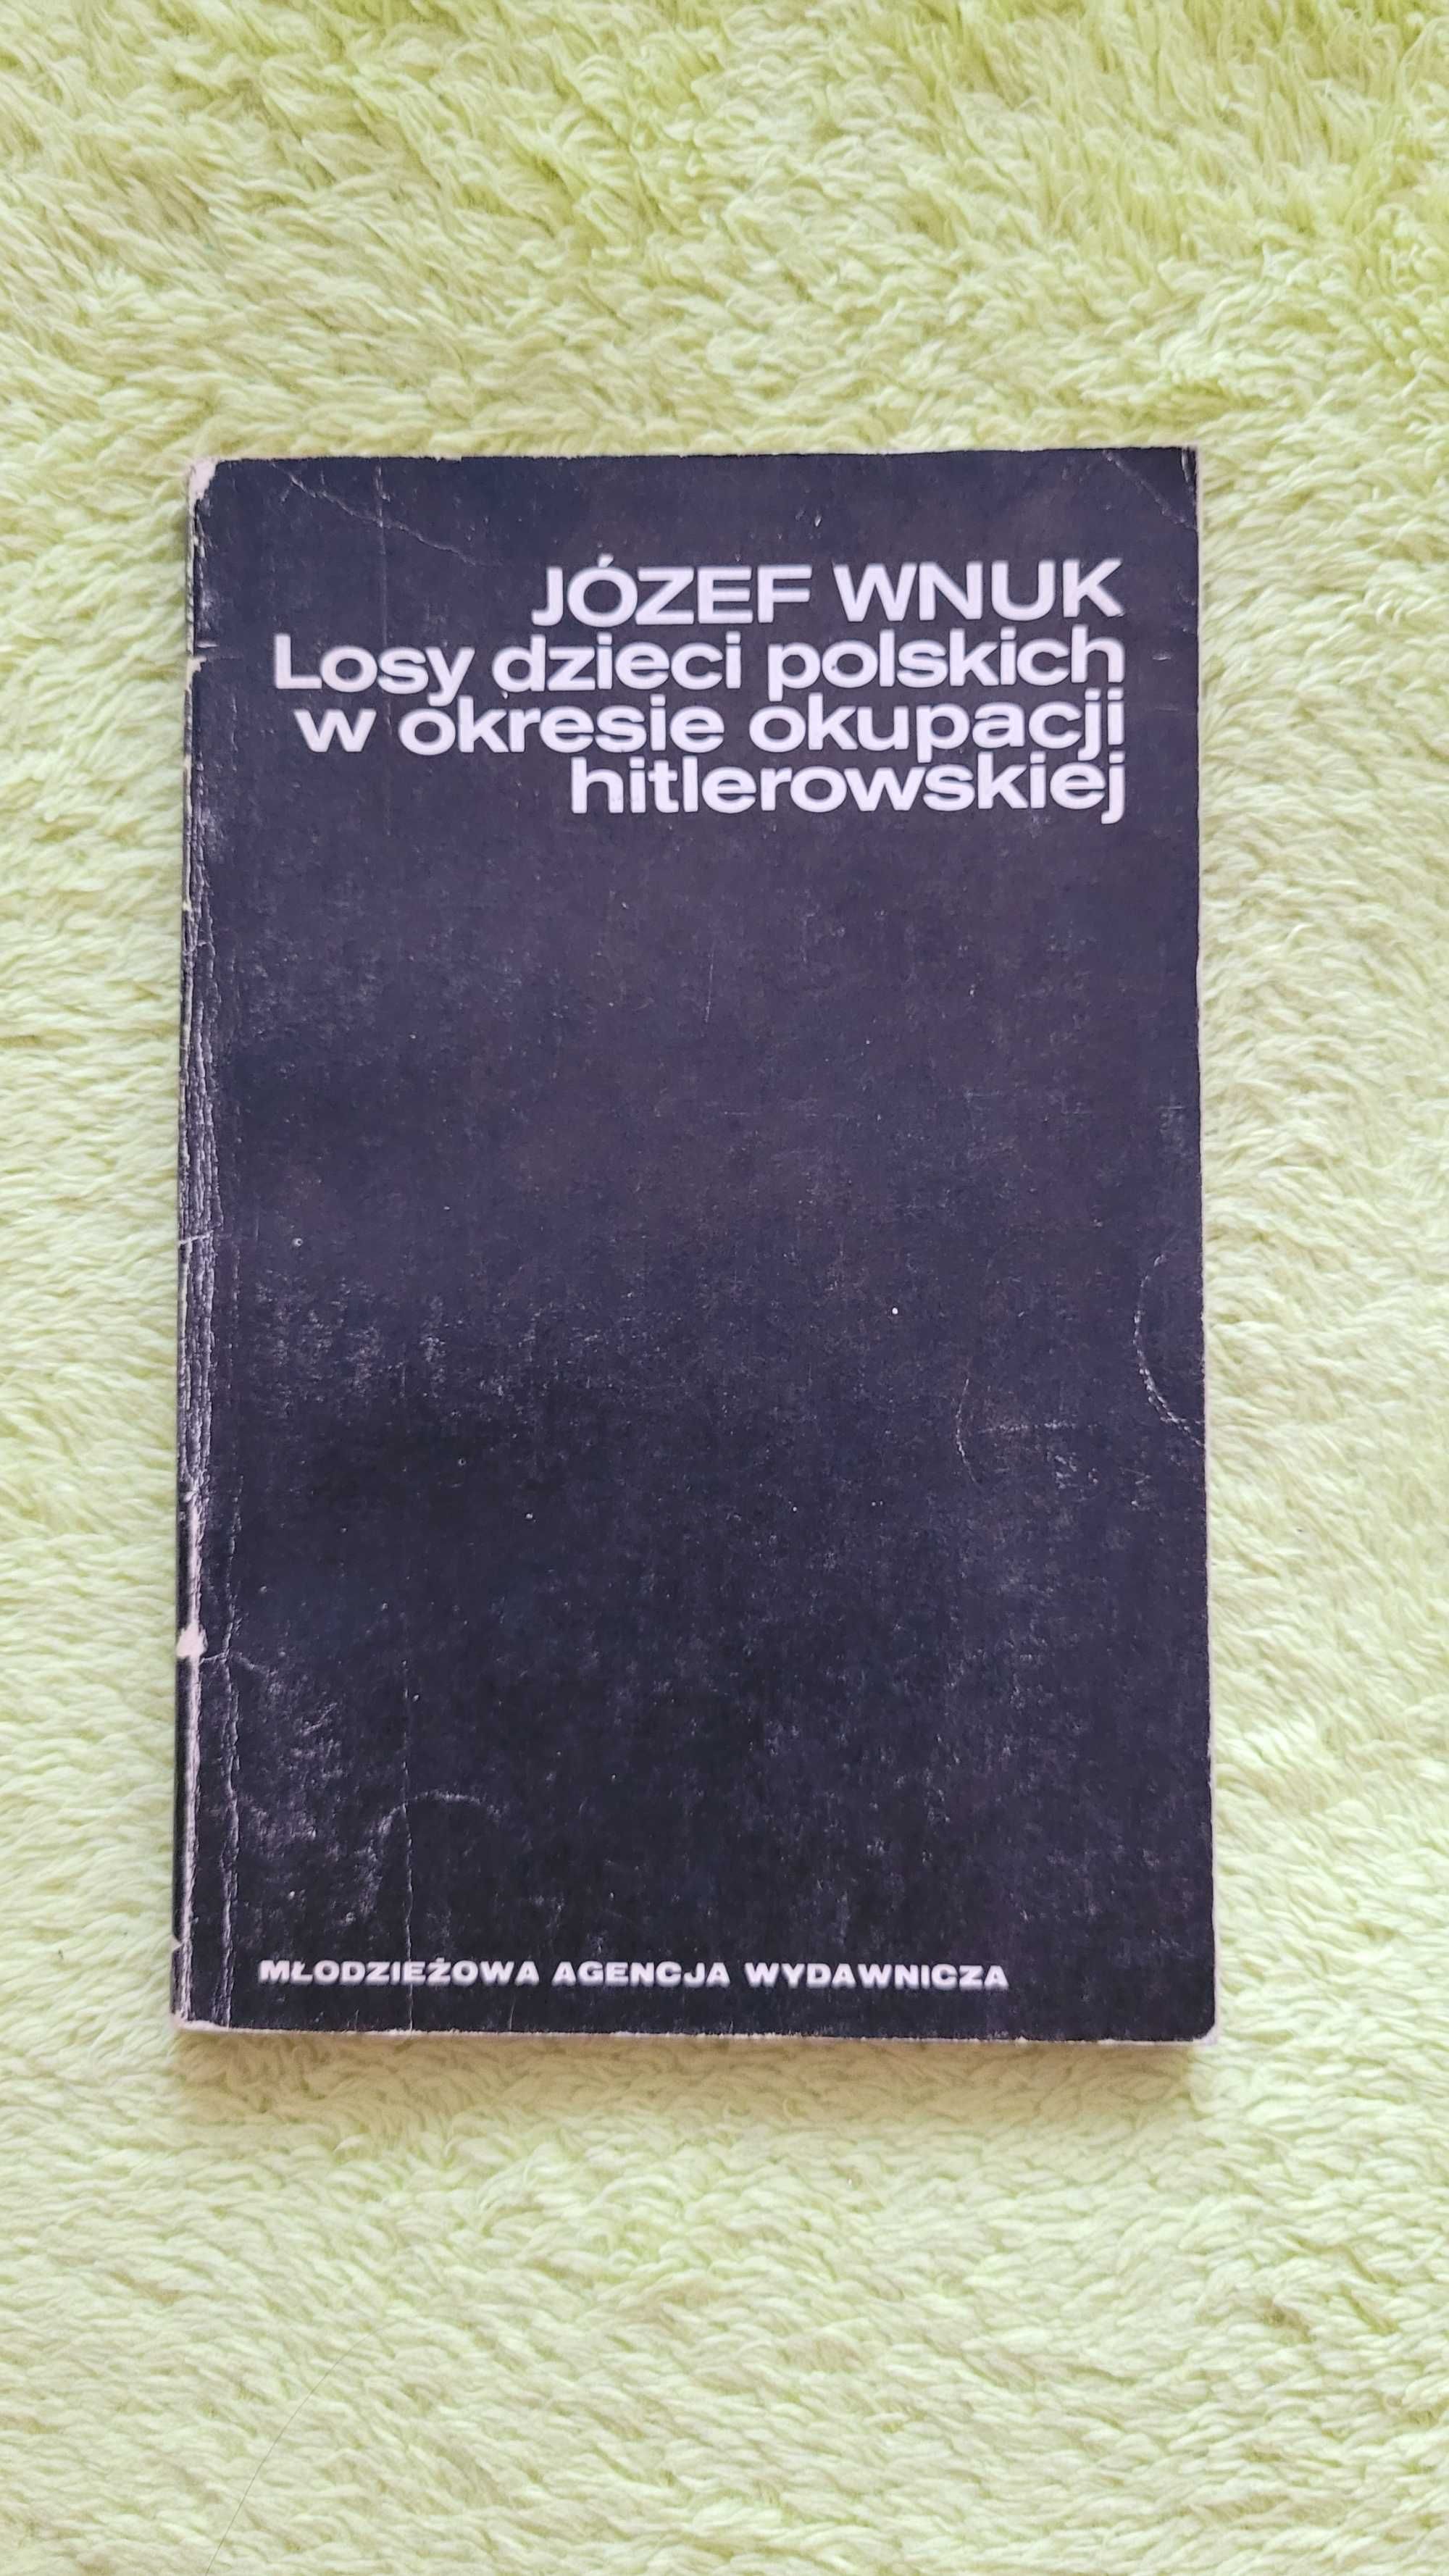 "Losy dzieci polskich w okresie okupacji hitlerowskiej", J. Wnuk